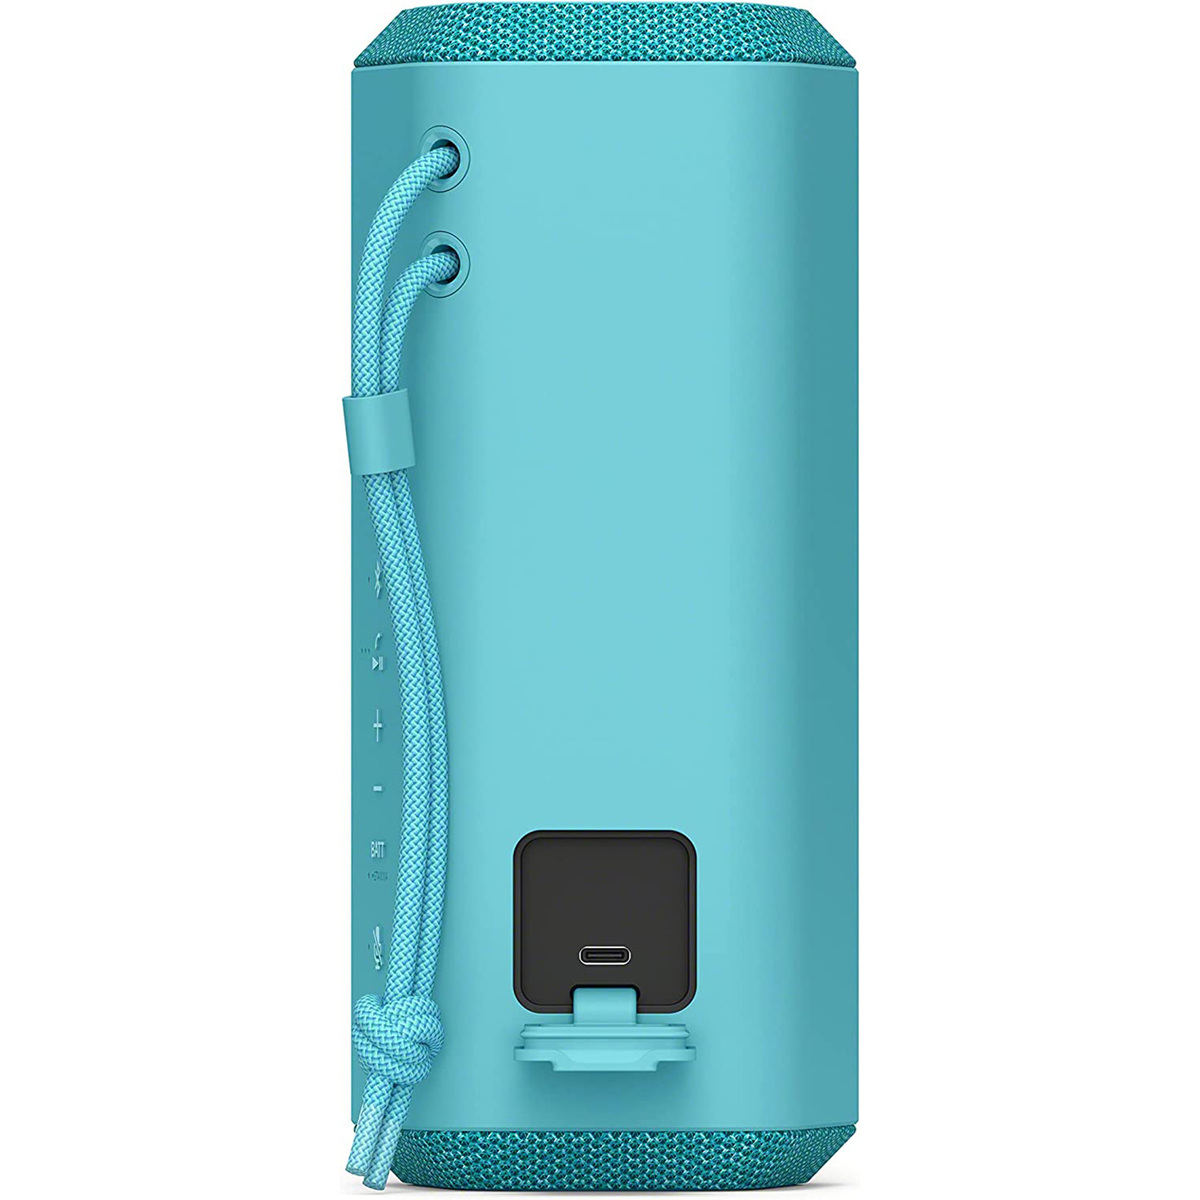 Sony Portable Wireless Bluetooth Speaker, Blue, SRS XE200